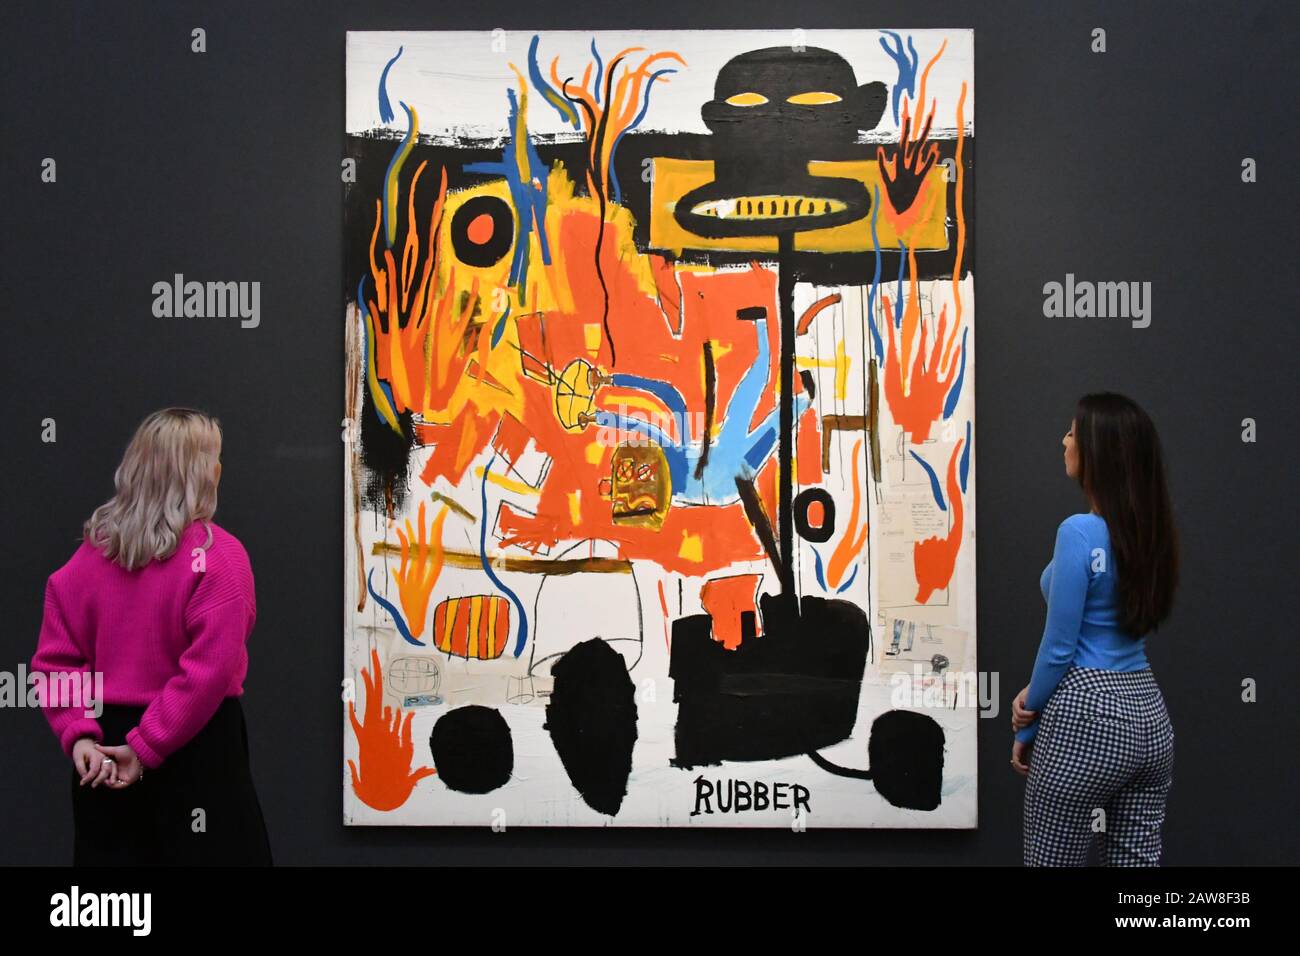 Jean-Michel Basquiat, Rubber, 1985, Estime à 6-8 millions de livres sterling les enchères d'art contemporain de cette saison à Sotheby's London, Royaume-Uni. 7 février 2020. Crédit: Nils Jorgensen/Alay Live News Banque D'Images